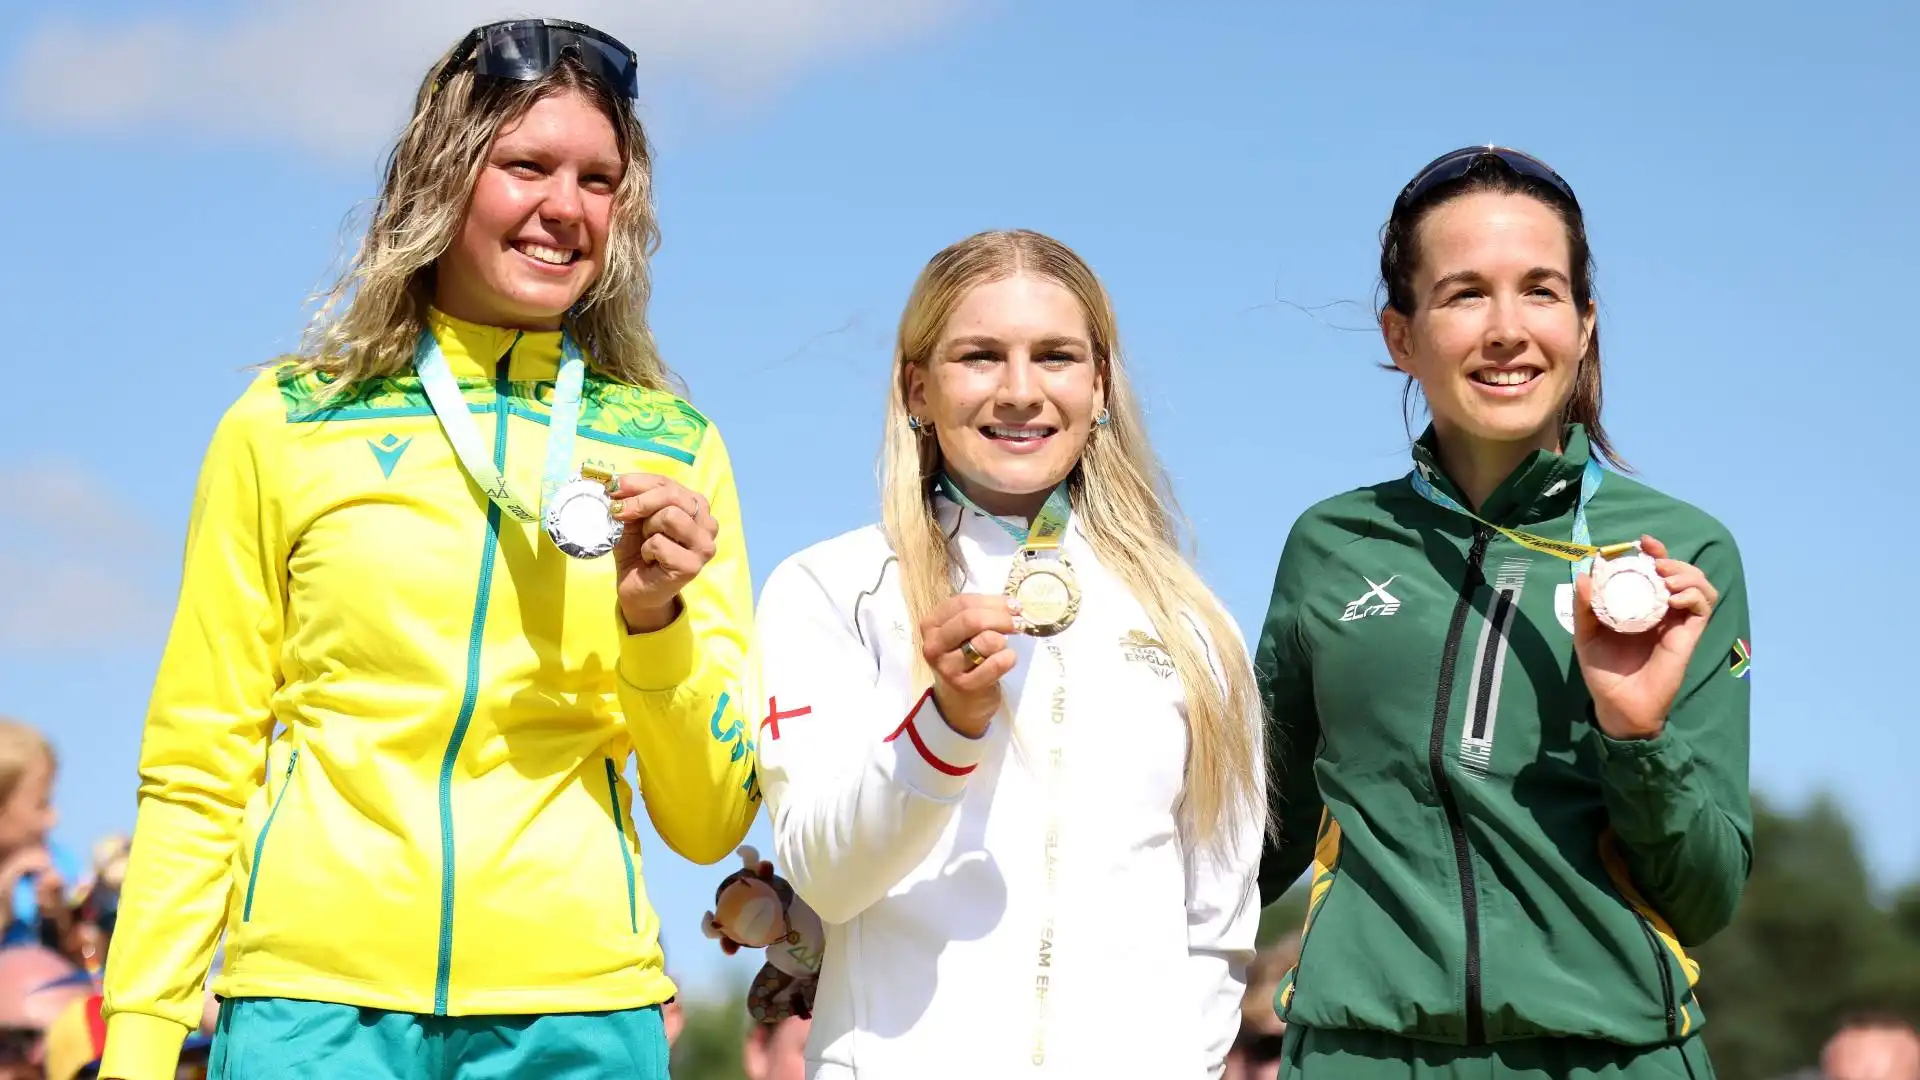 Hanno chiuso il podio l'australiana Zoe Cuthbert (seconda) e la sudafricana Lill Candice (terza)